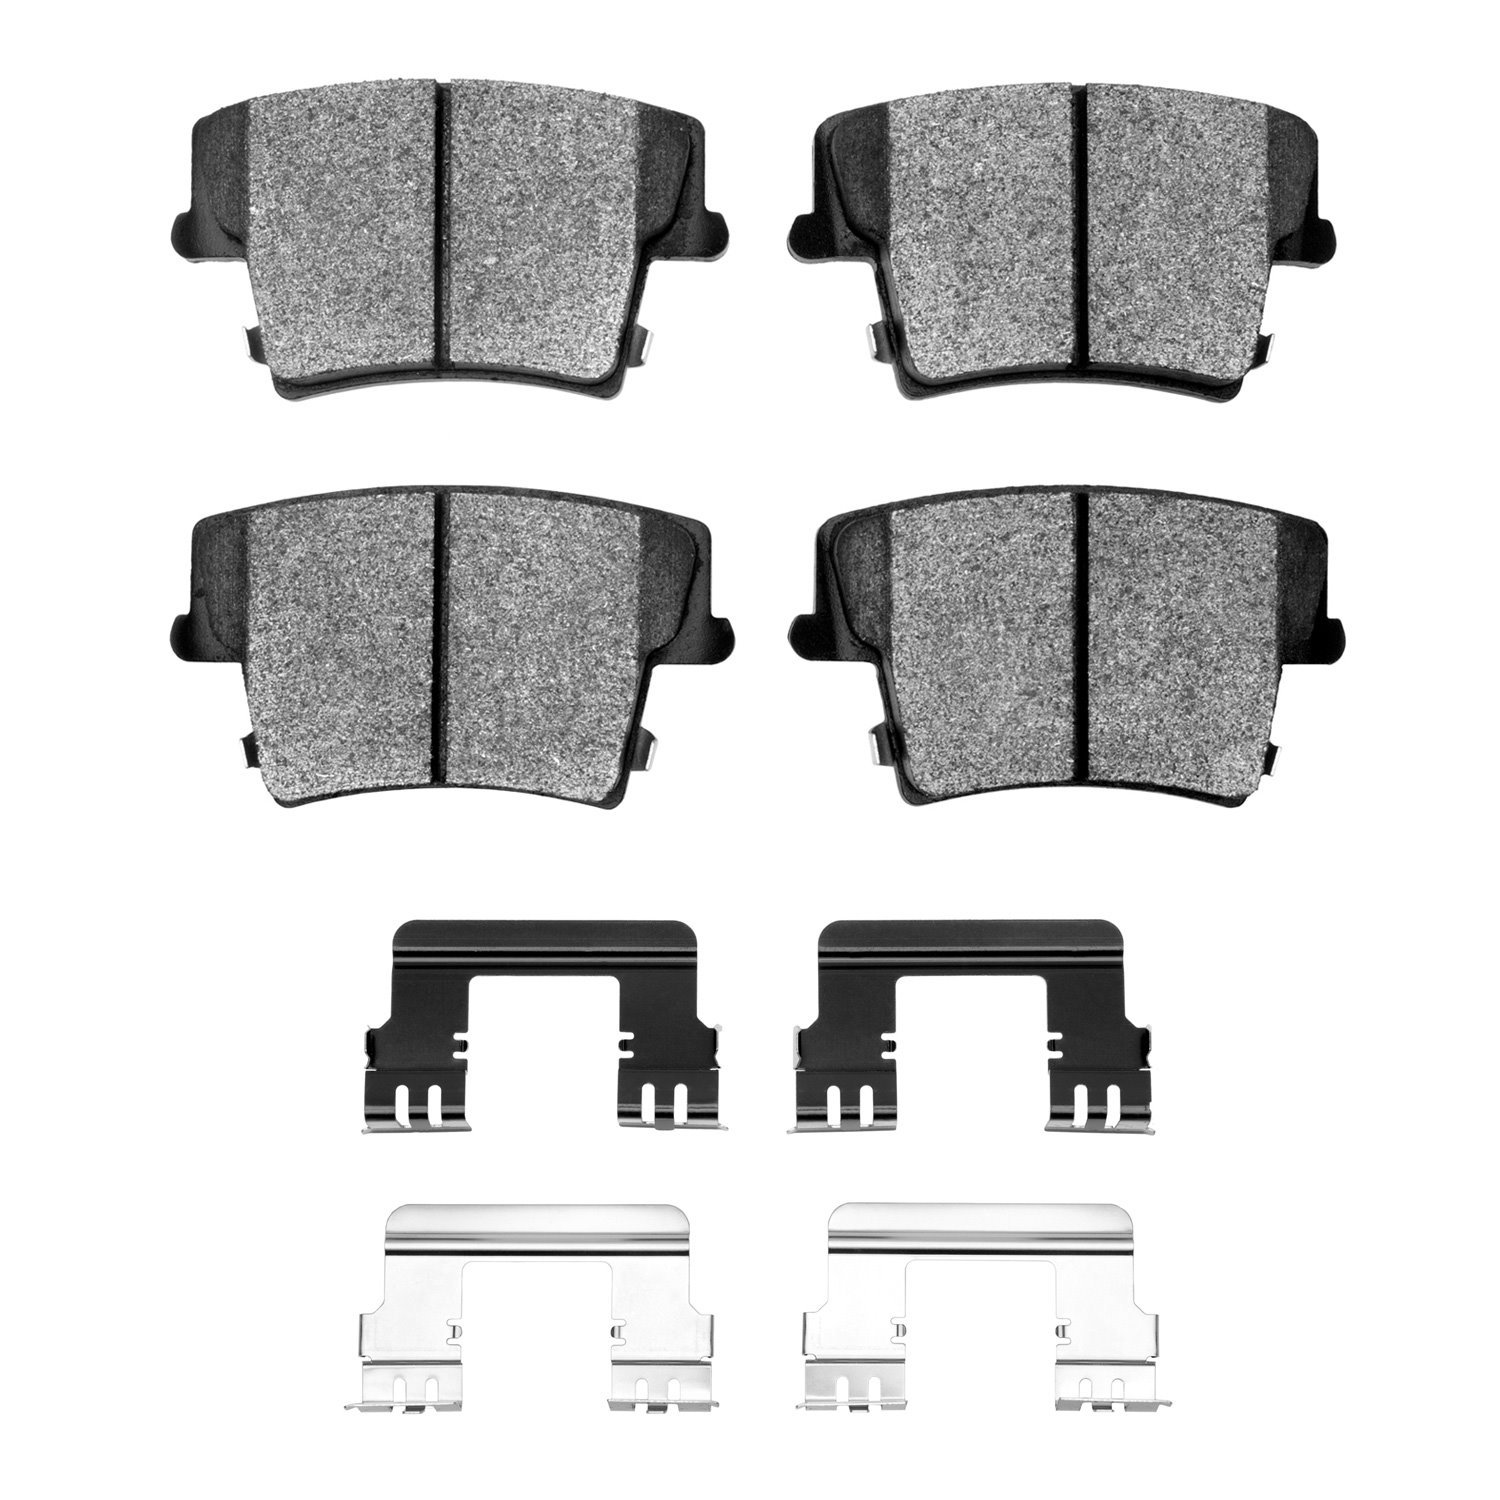 1214-1057-03 Heavy-Duty Brake Pads & Hardware Kit, Fits Select Mopar, Position: Rear